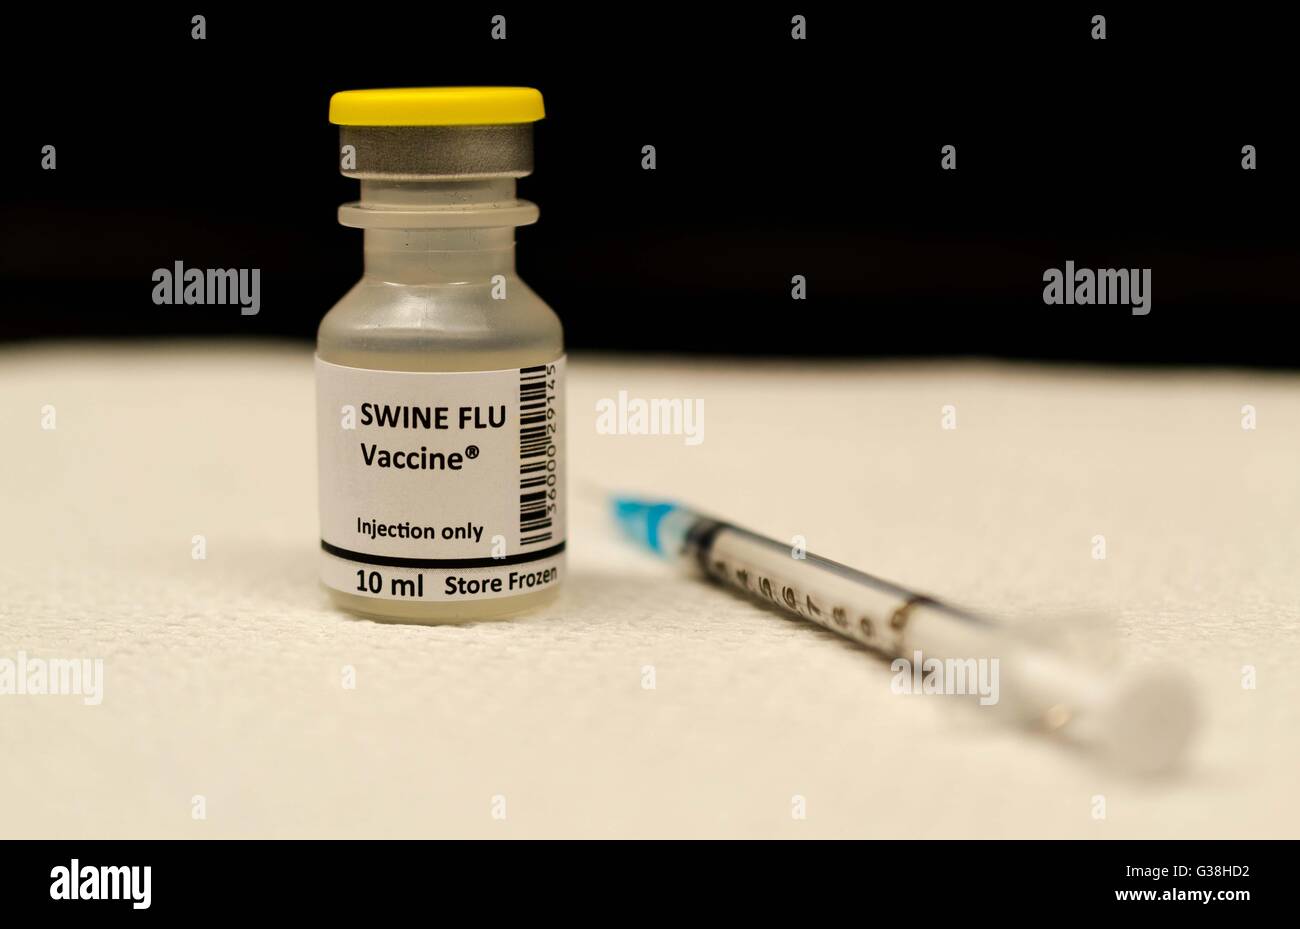 Swine flu vaccine Stock Photo